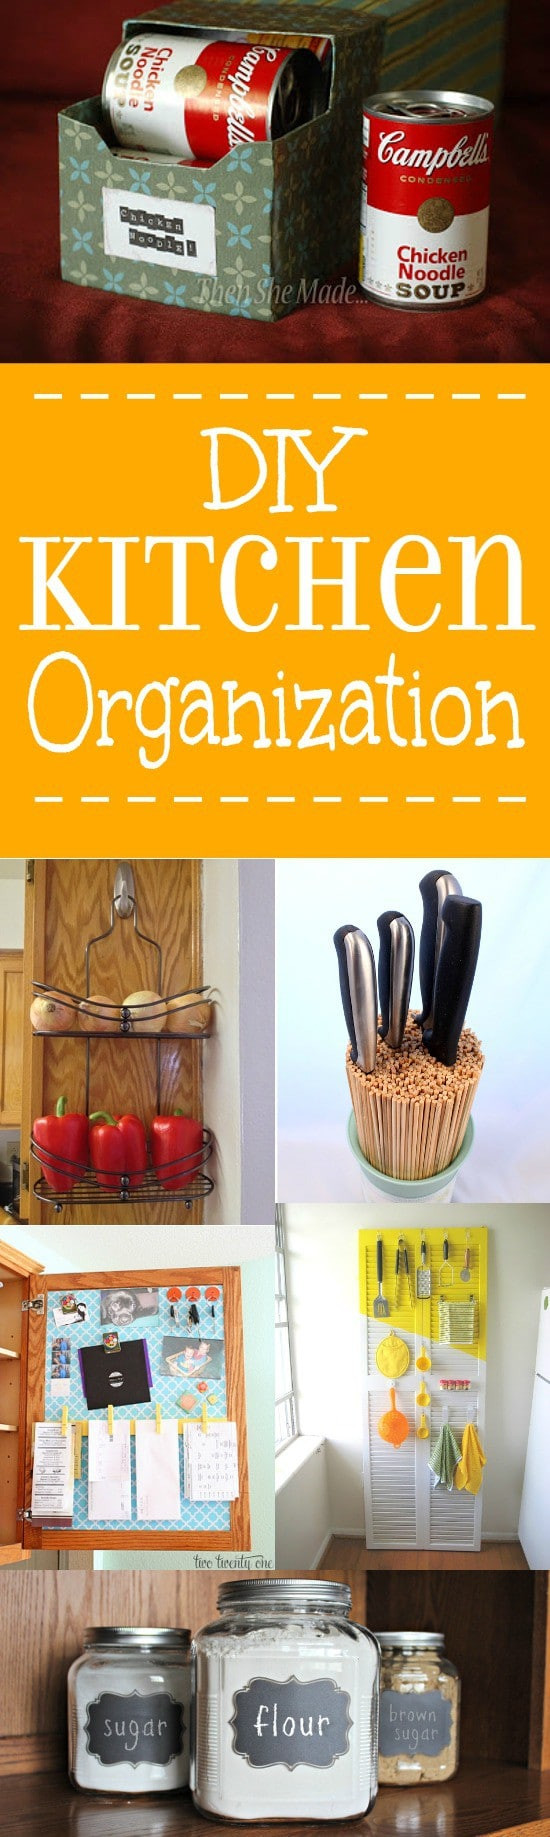 Kitchen Organizing Pinterest
 DIY Kitchen Organization Ideas